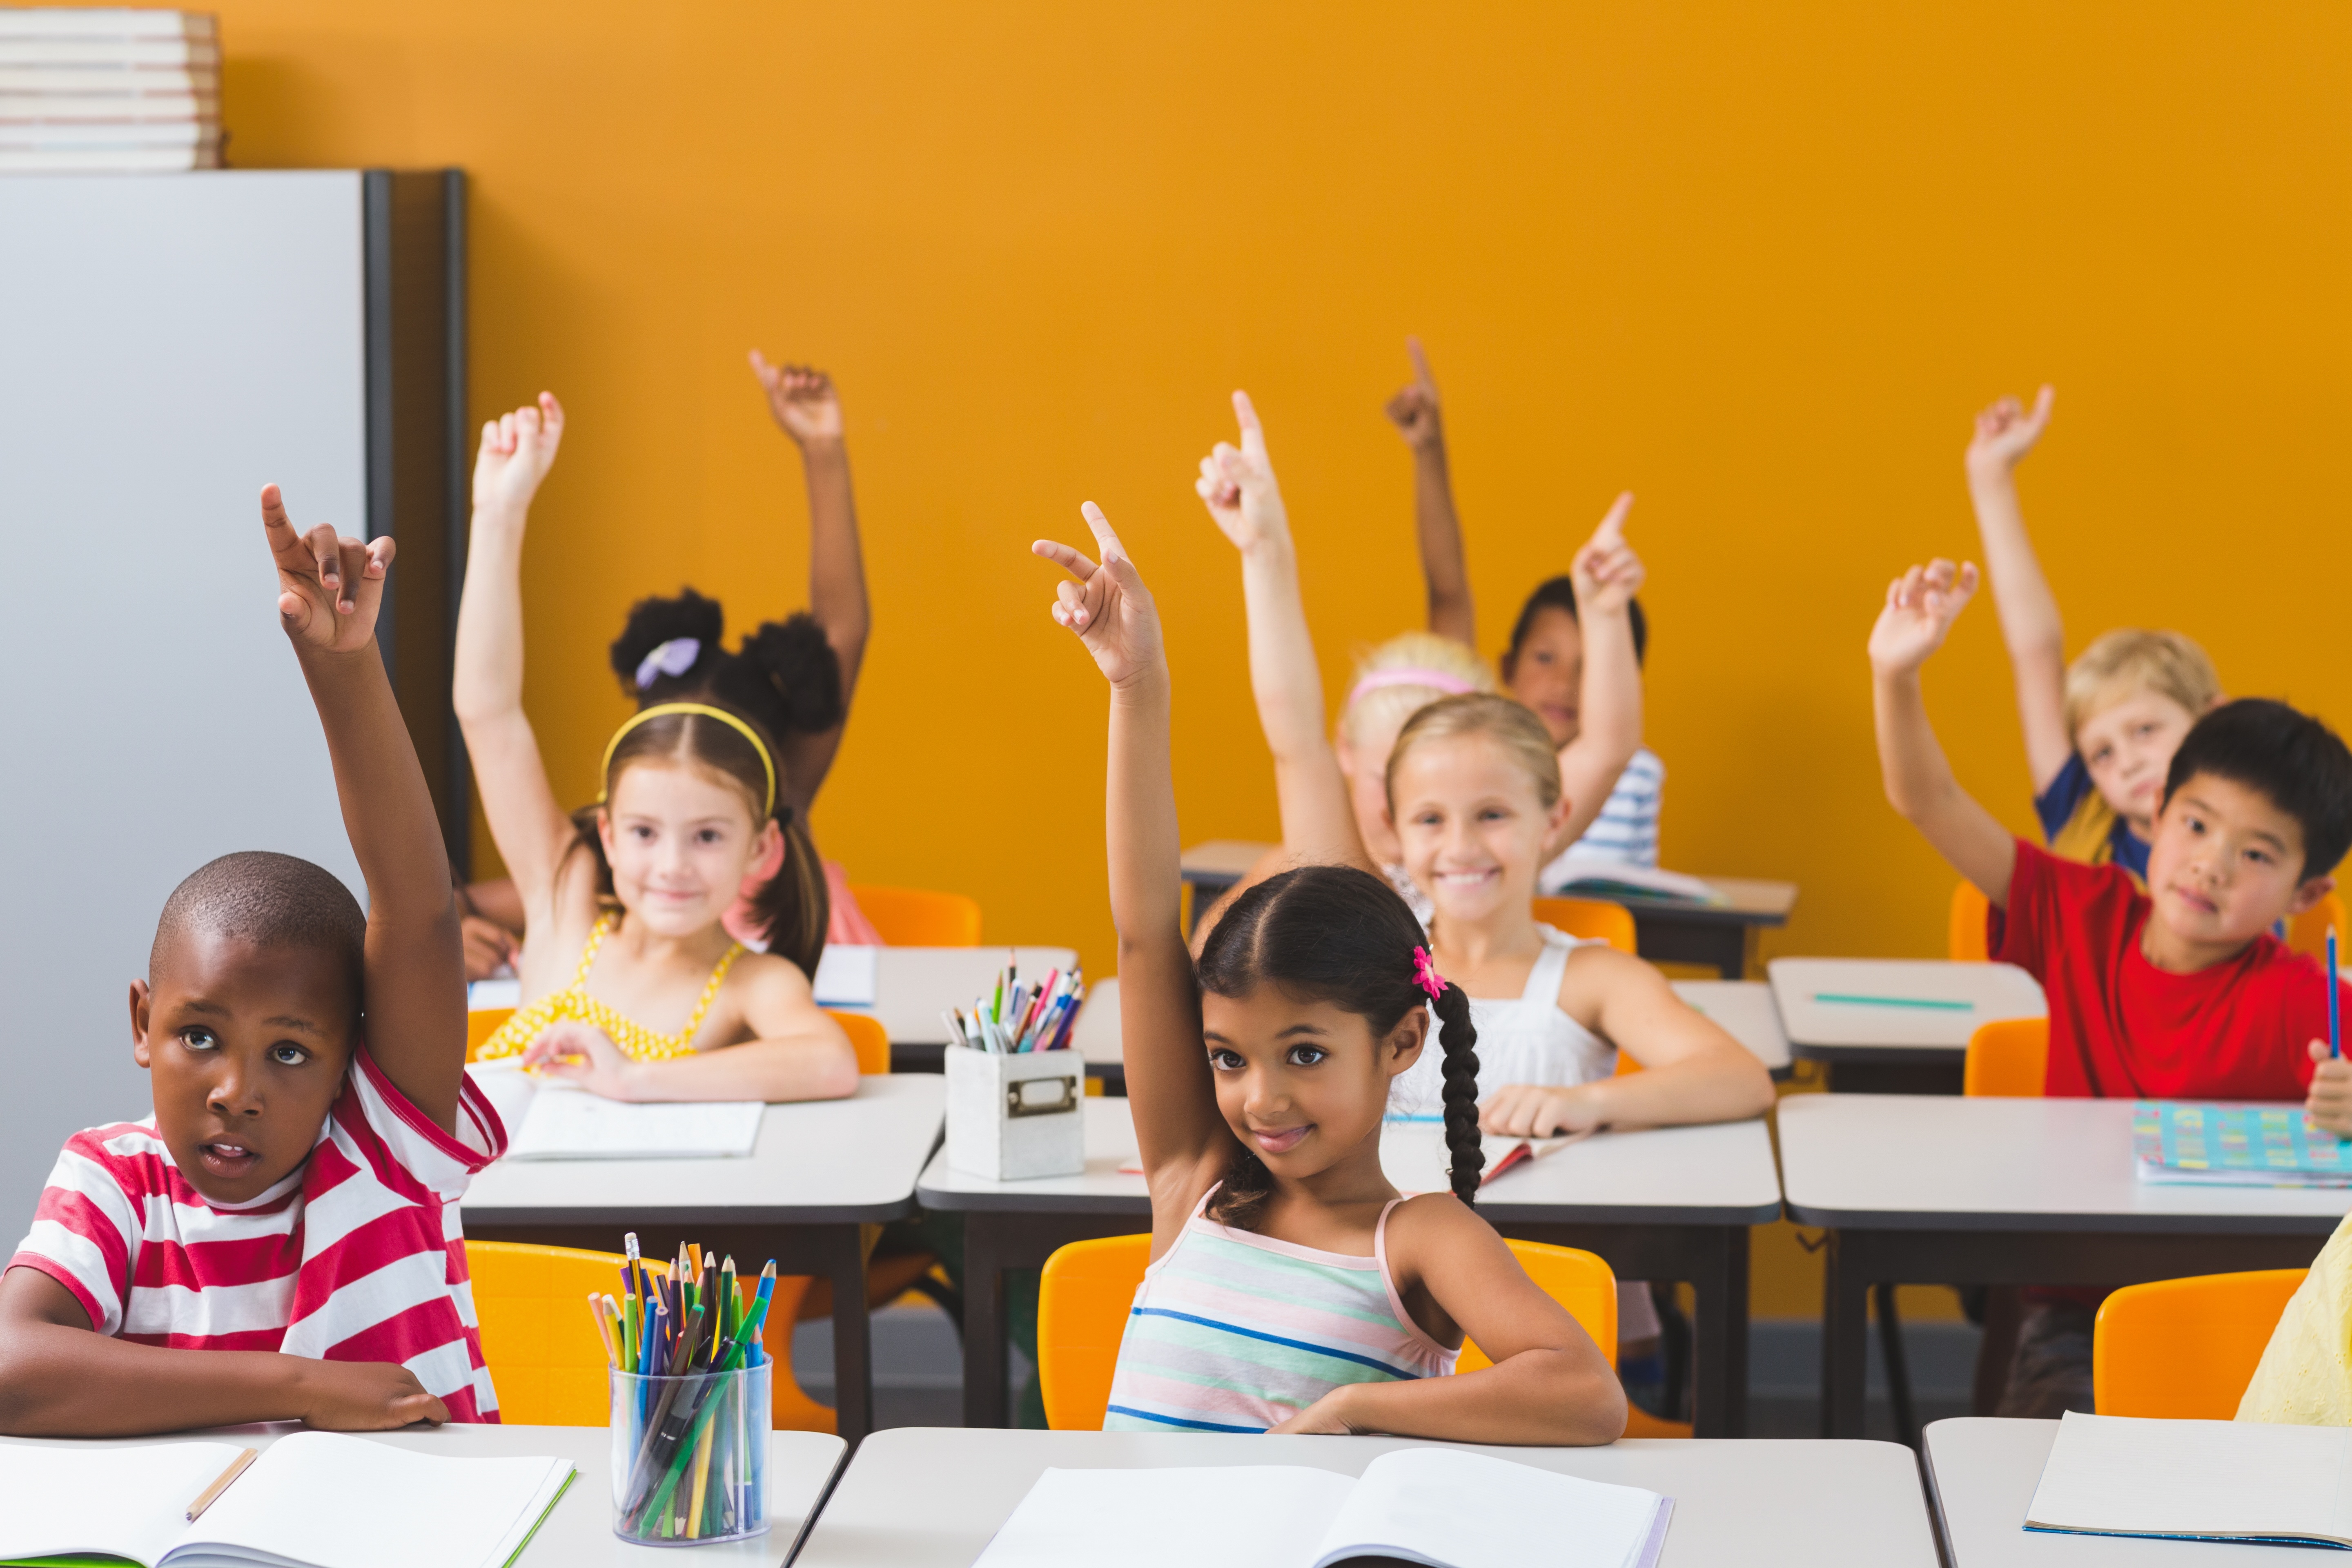 School kids raising hand in classroom.